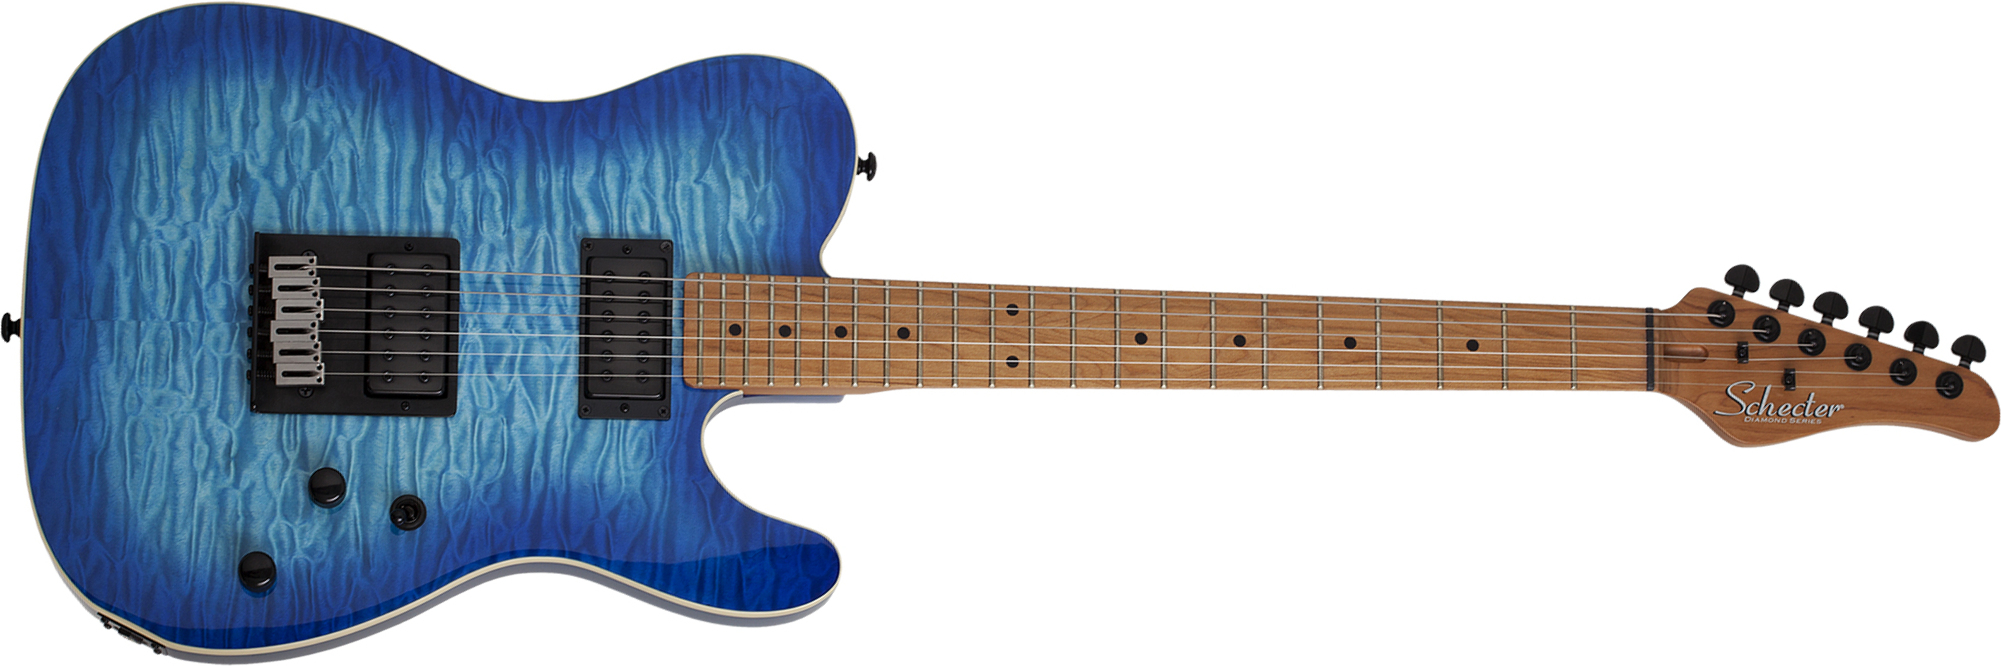 Schecter Pt Pro 2h Ht Mn - Trans Blue Burst - Tel shape electric guitar - Main picture